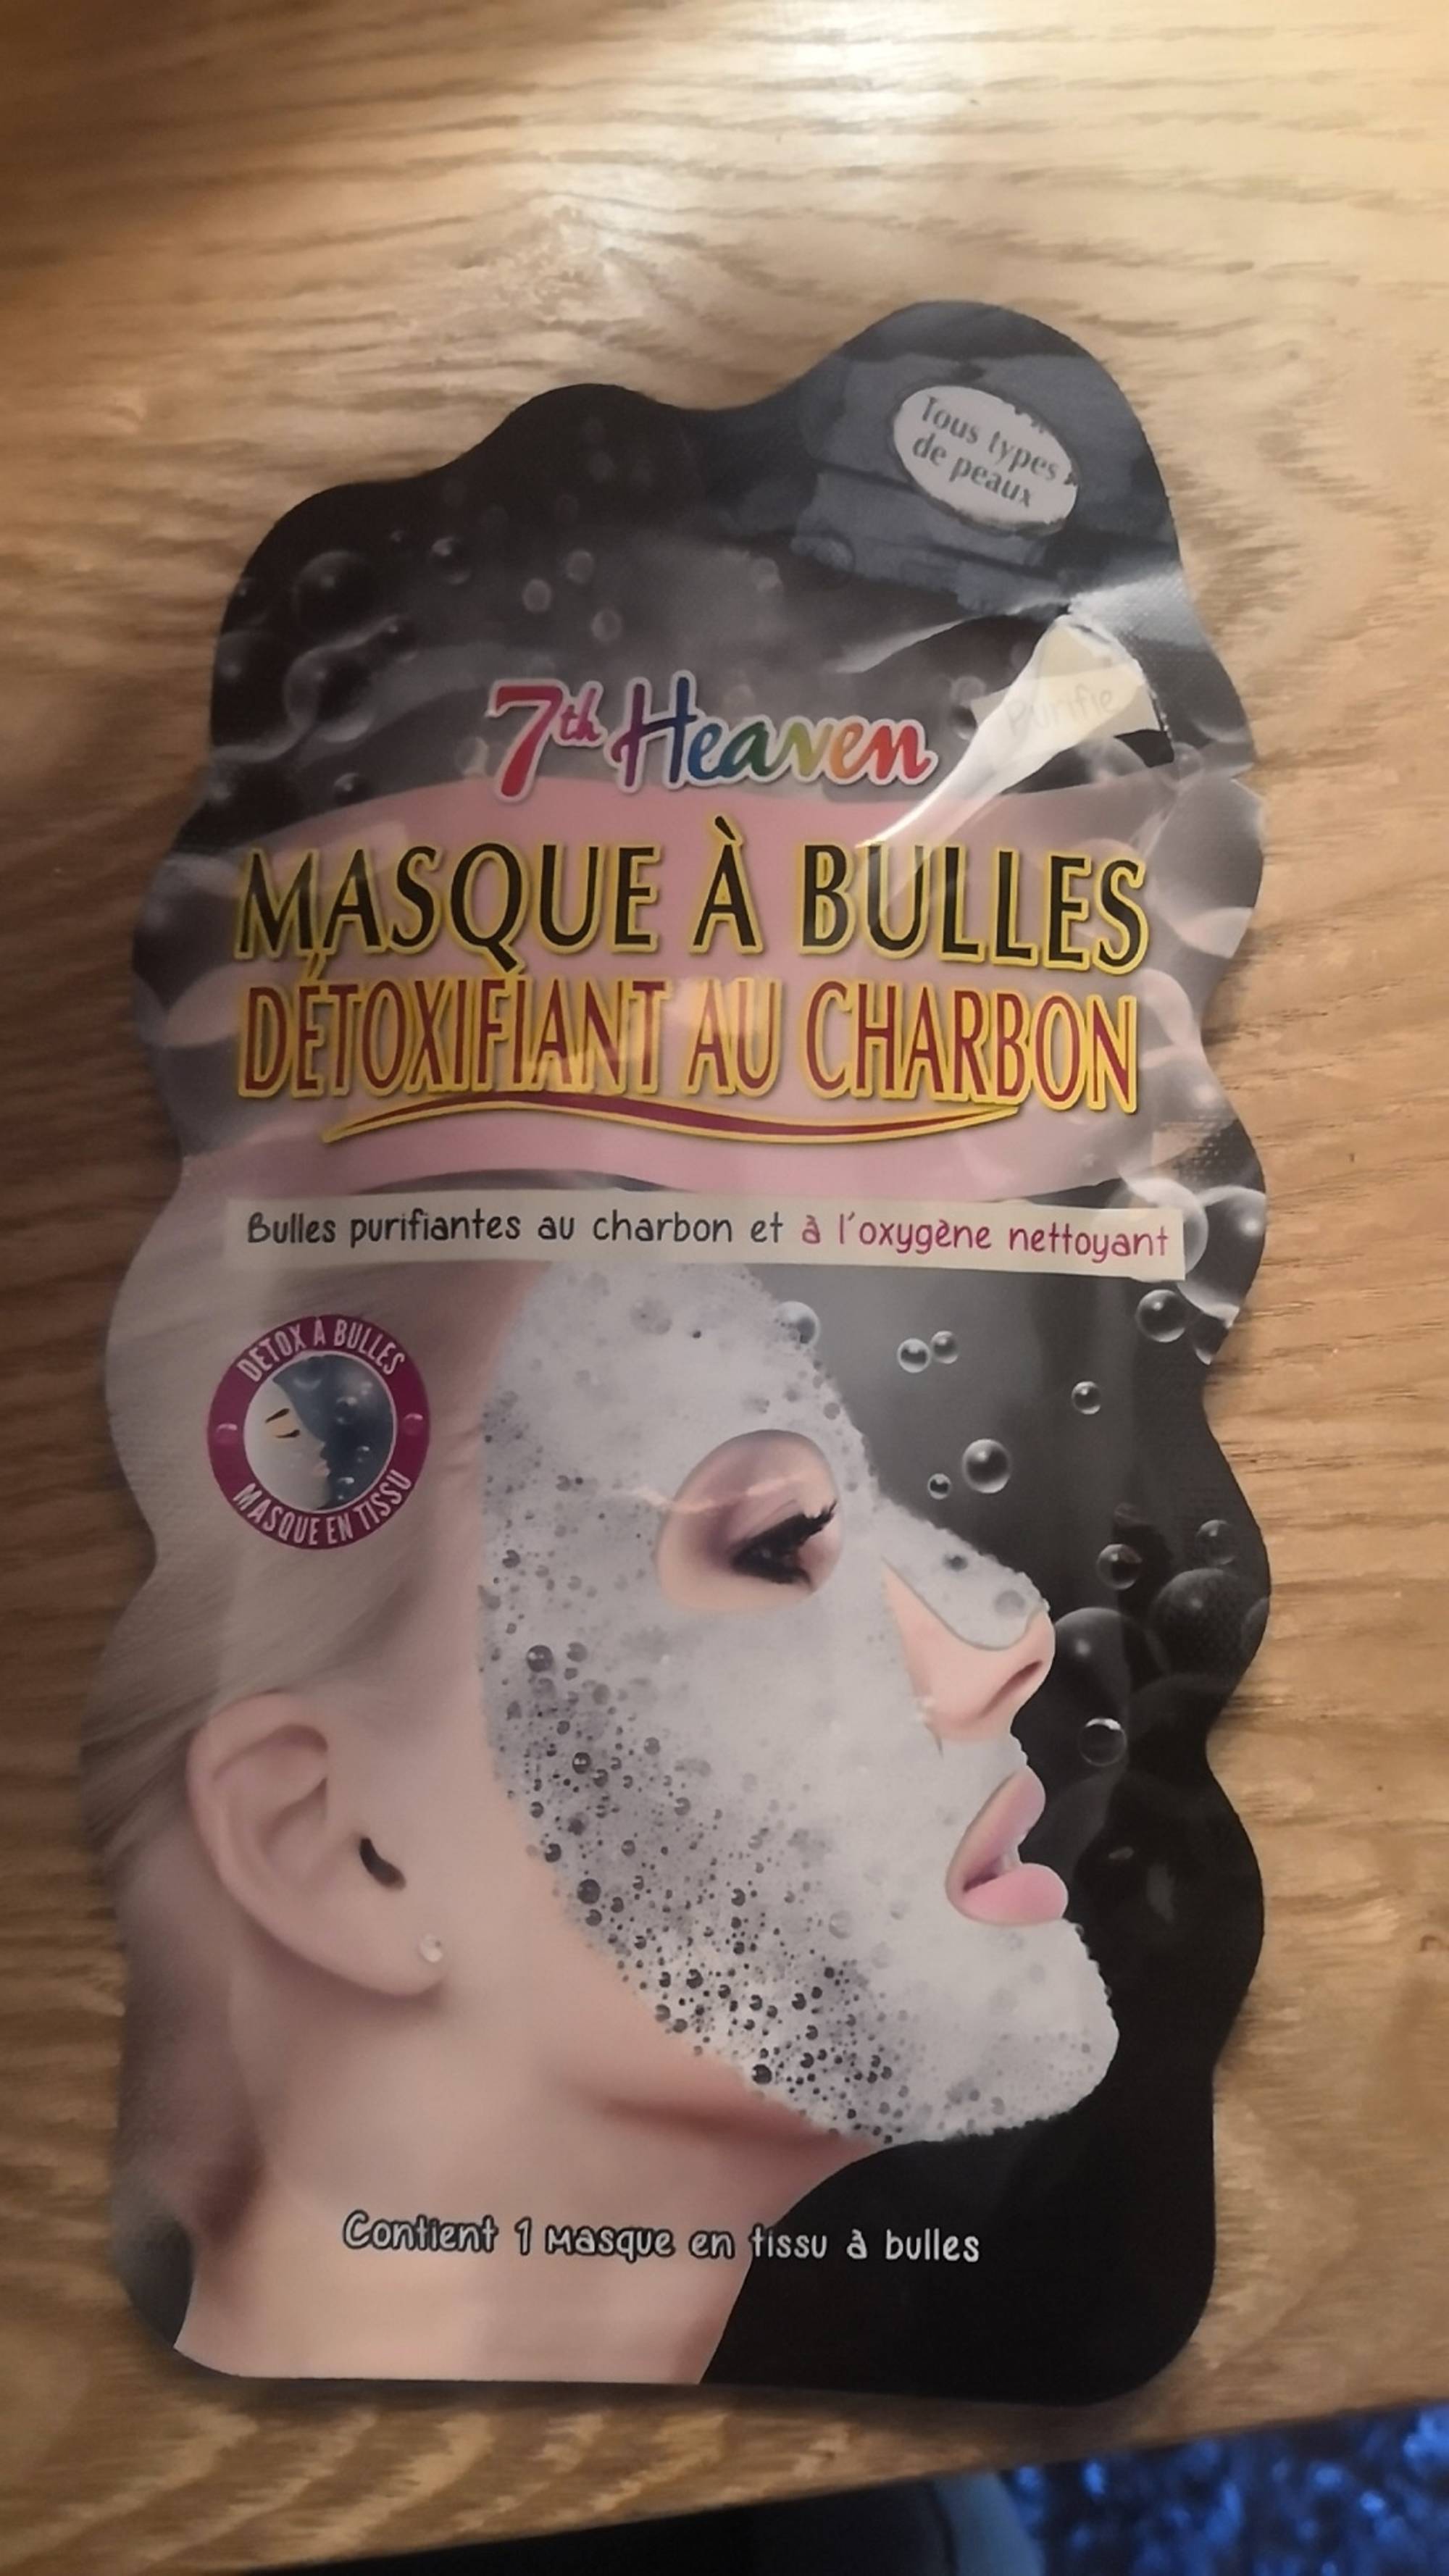 7TH HEAVEN - Masque à bulles détoxifiant au charbon